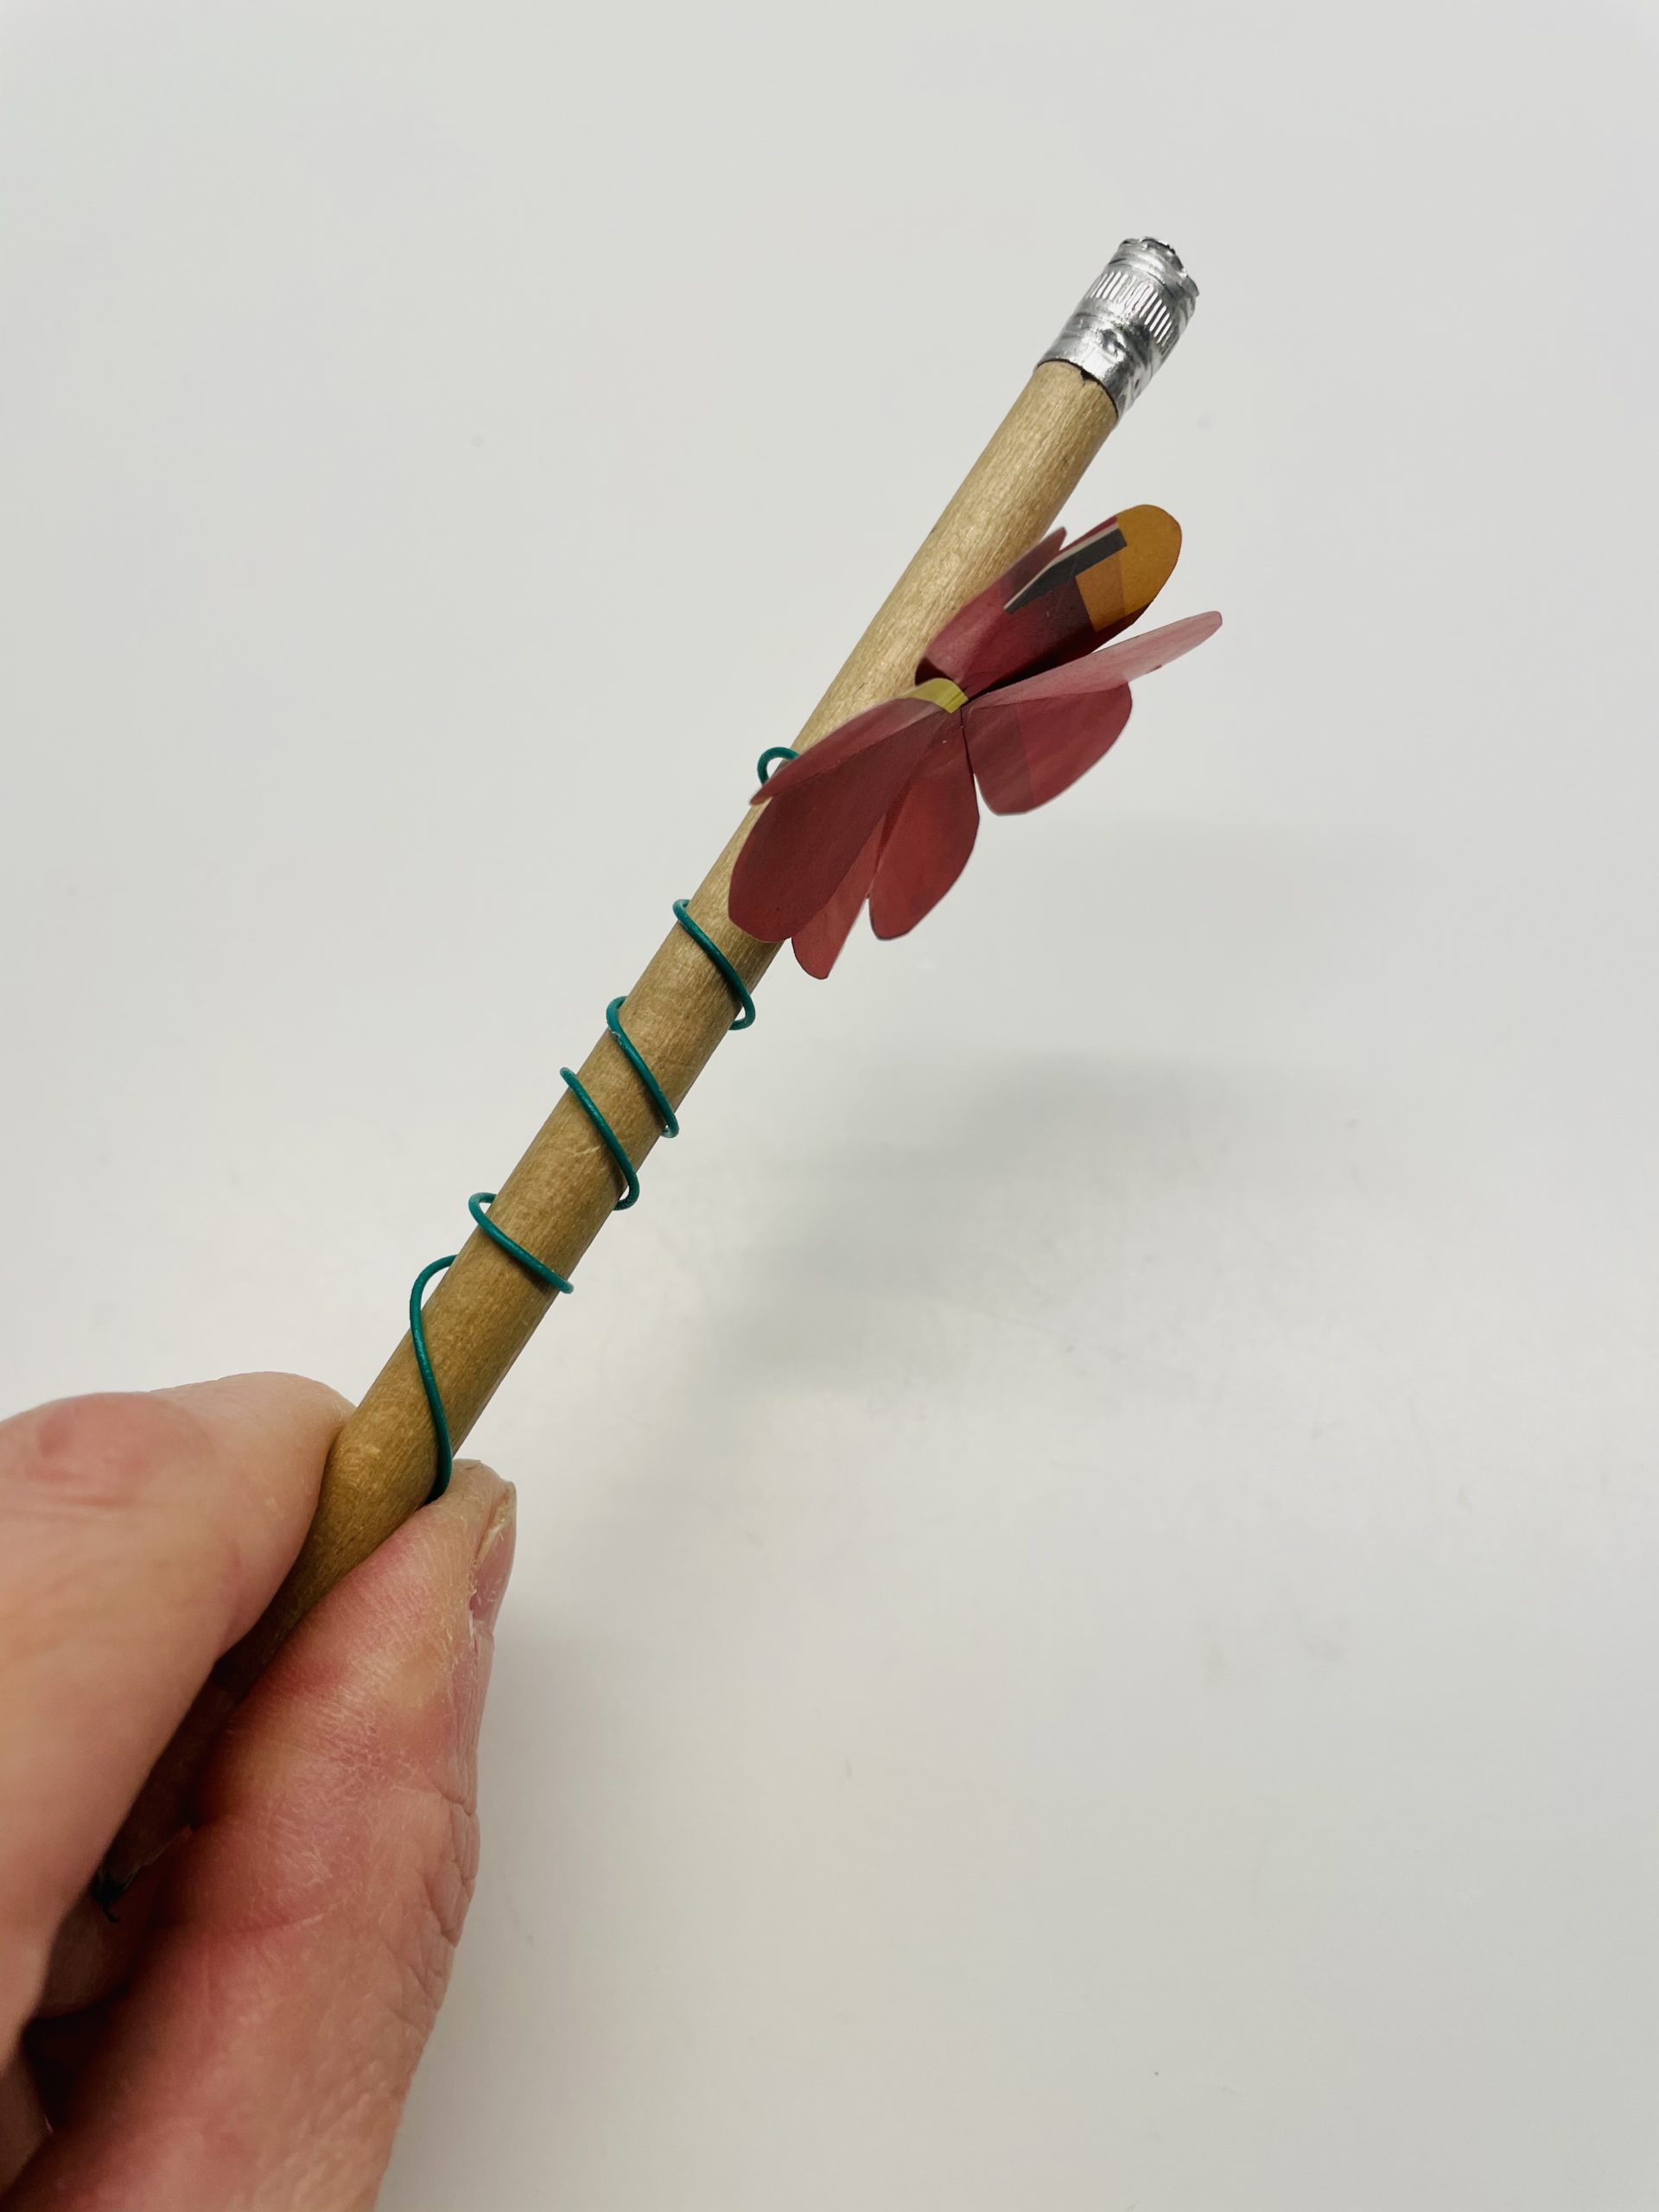 Bild zum Schritt 13 für das Bastel- und DIY-Abenteuer für Kinder: 'Anschließend müsst ihr den Bleistift wieder herausziehen.'